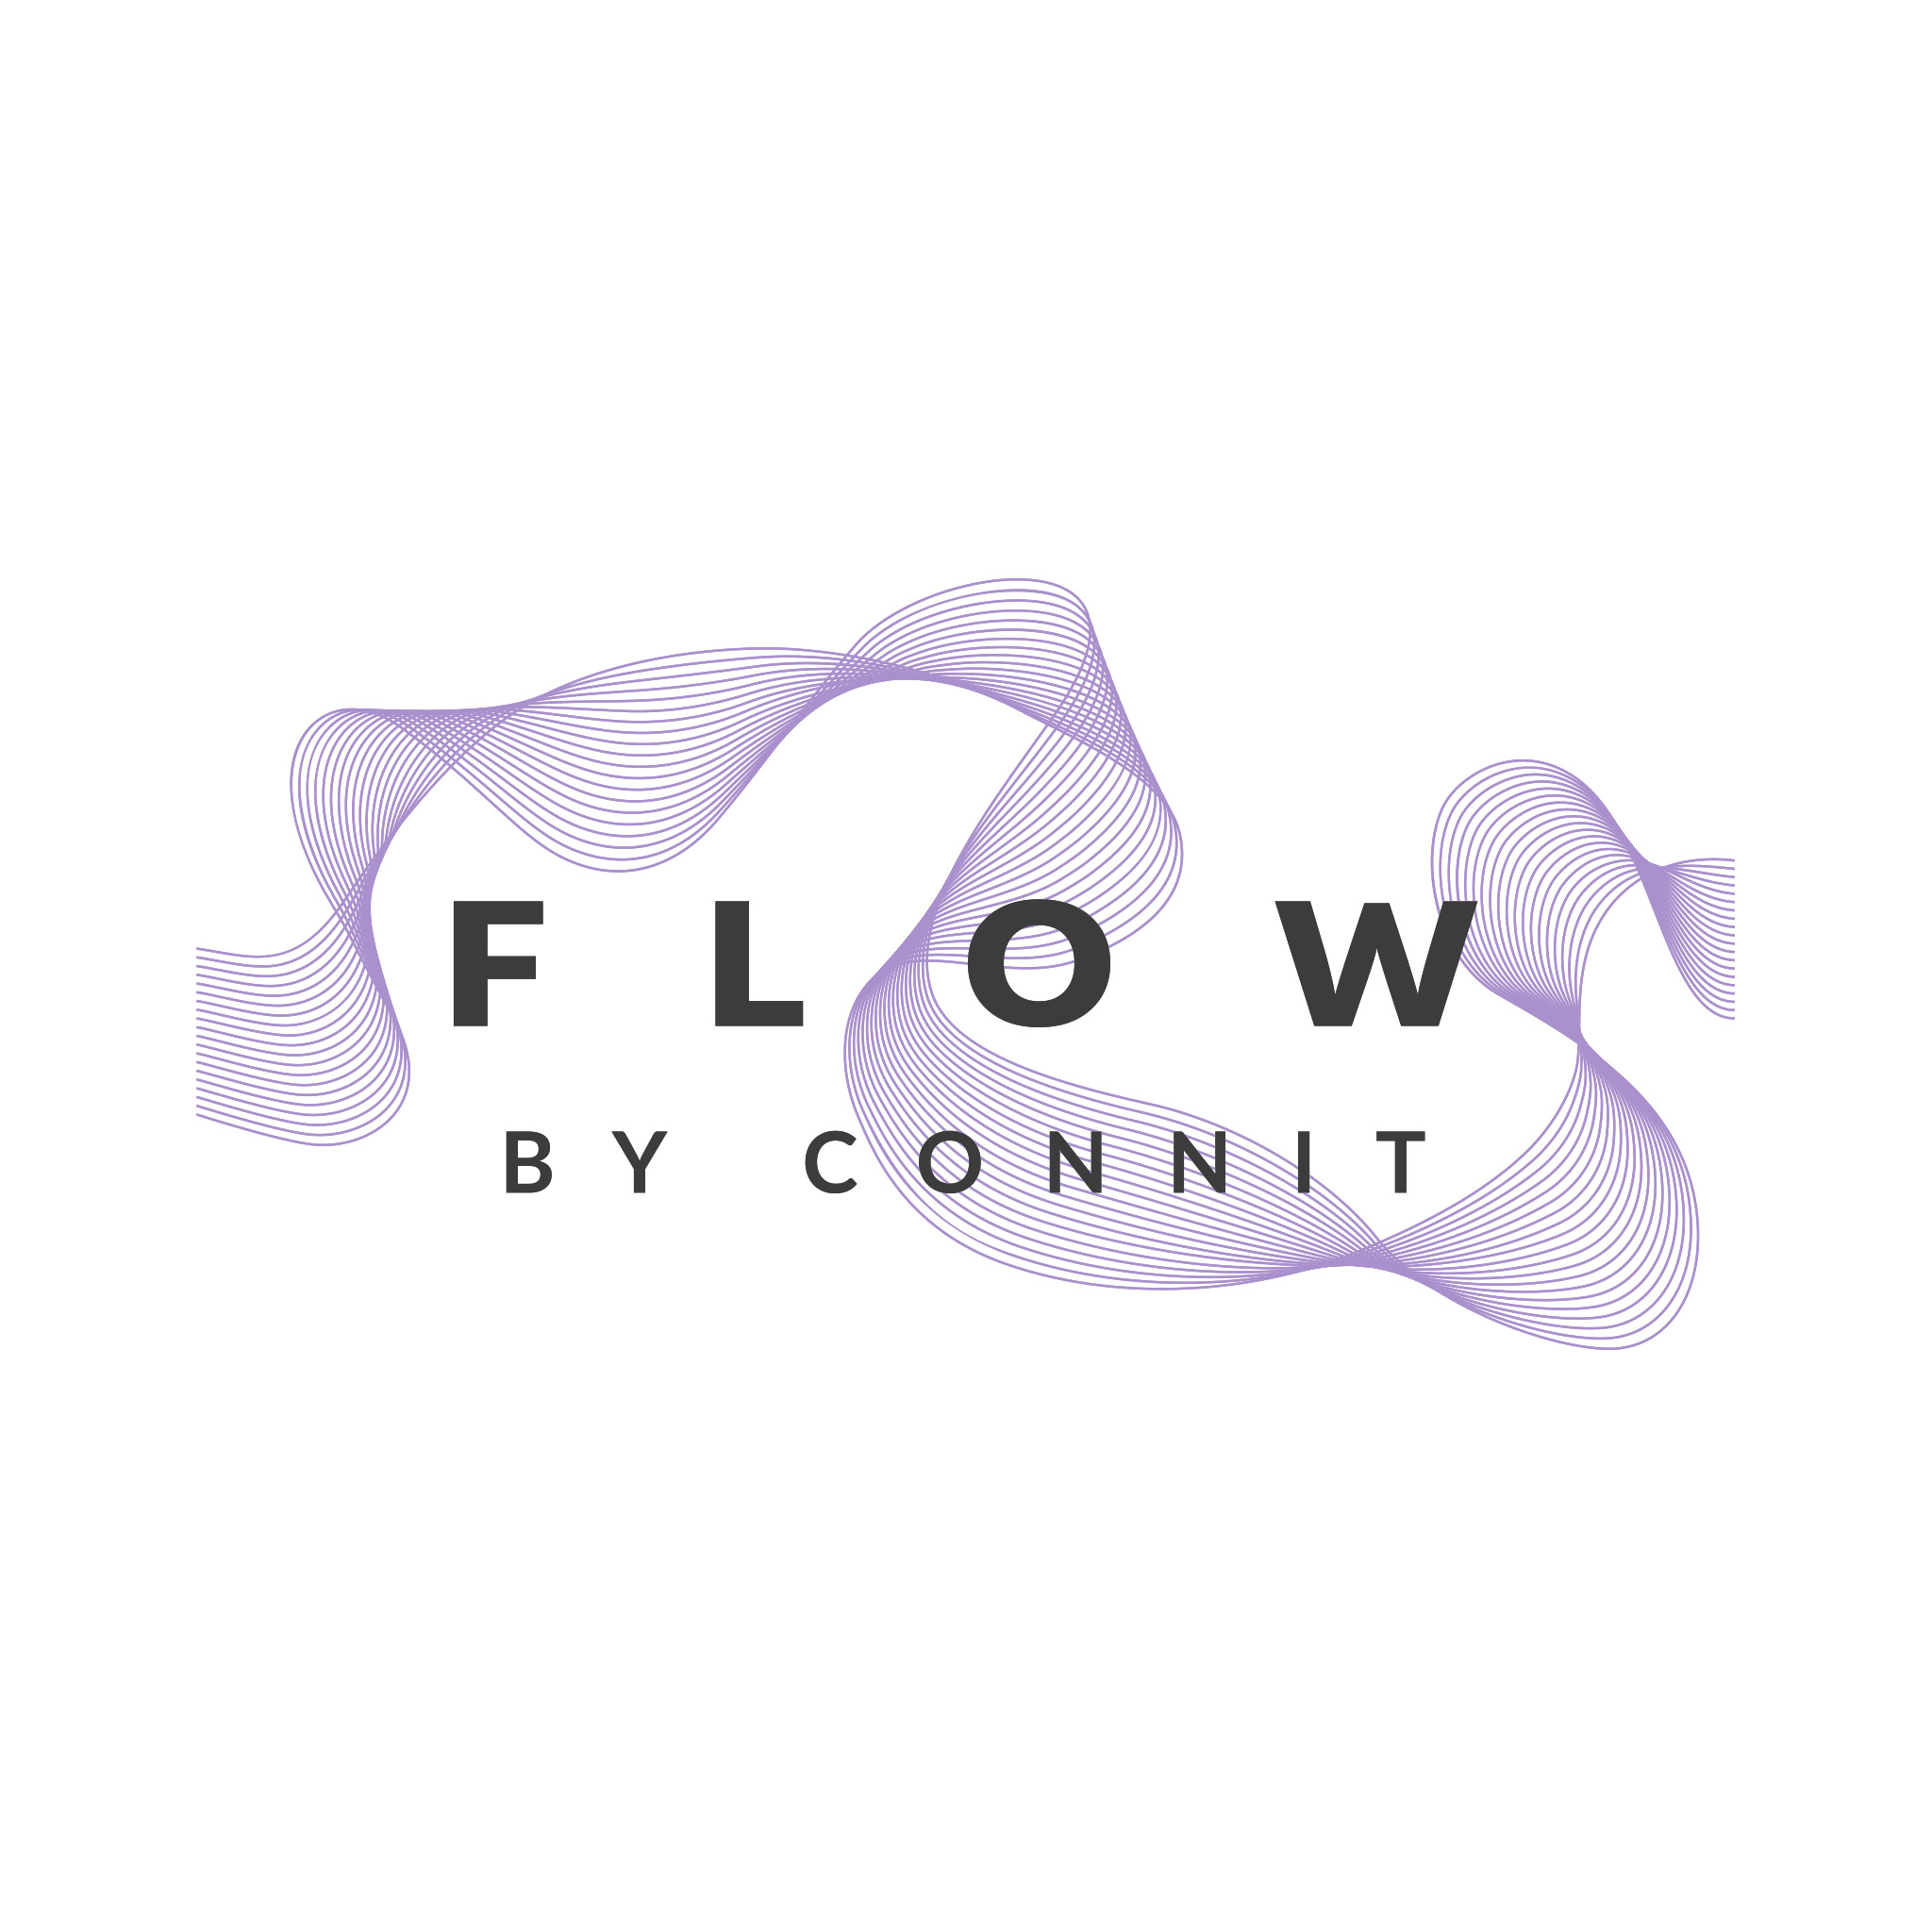 autograff-design-graphique-graphiste-toulouse-france-logo-produit-connit-startup-iot-flow